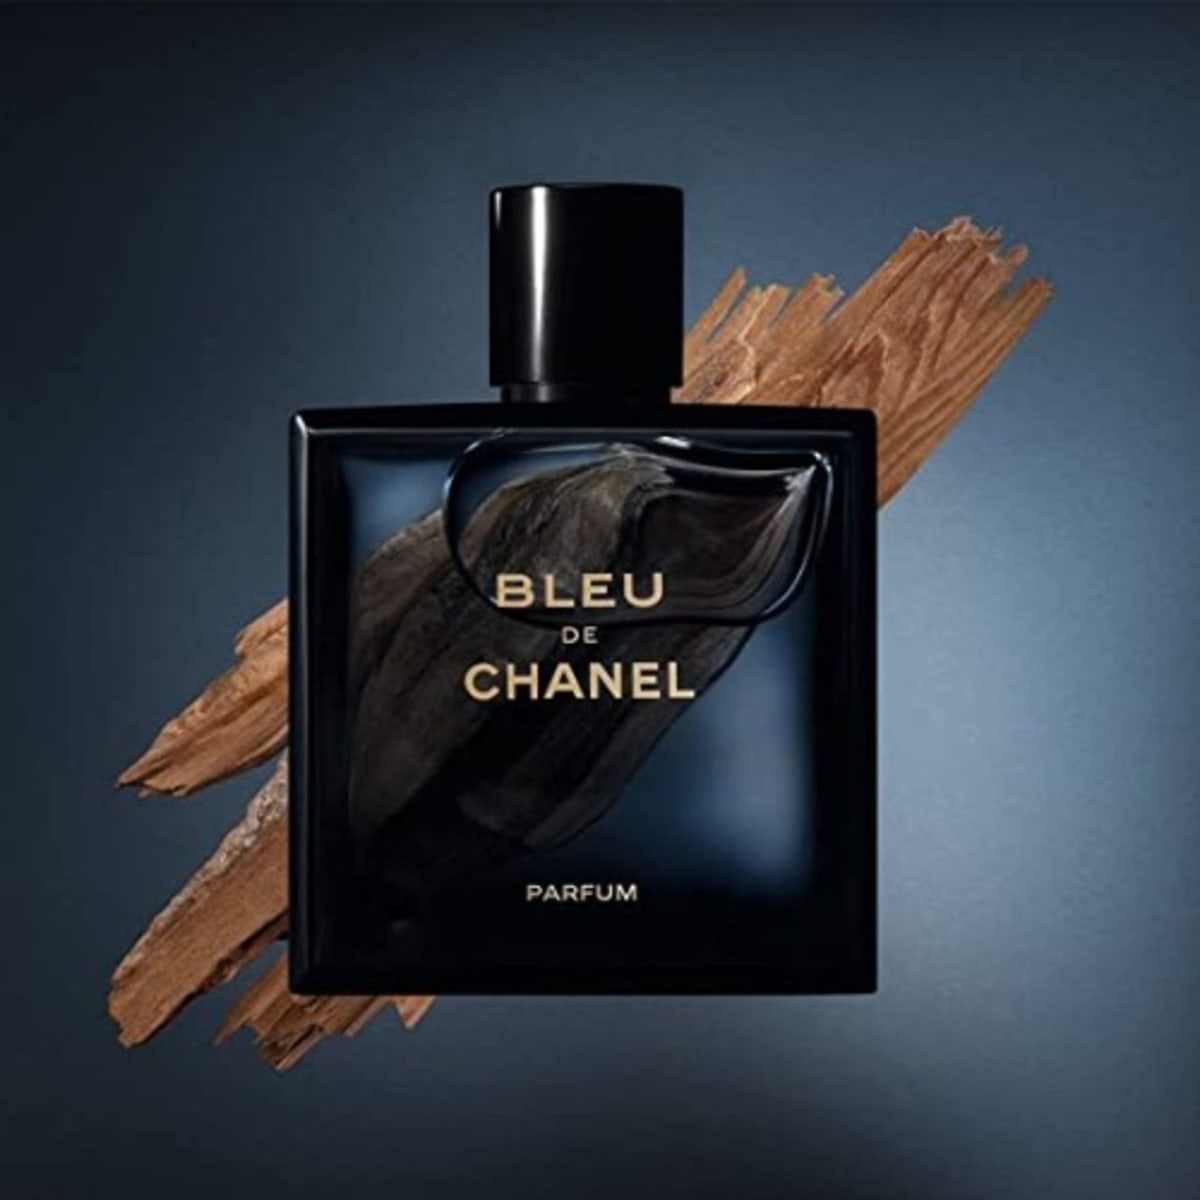 Bleu de Chanel Parfum Chanel cologne  a fragrance for men 2018